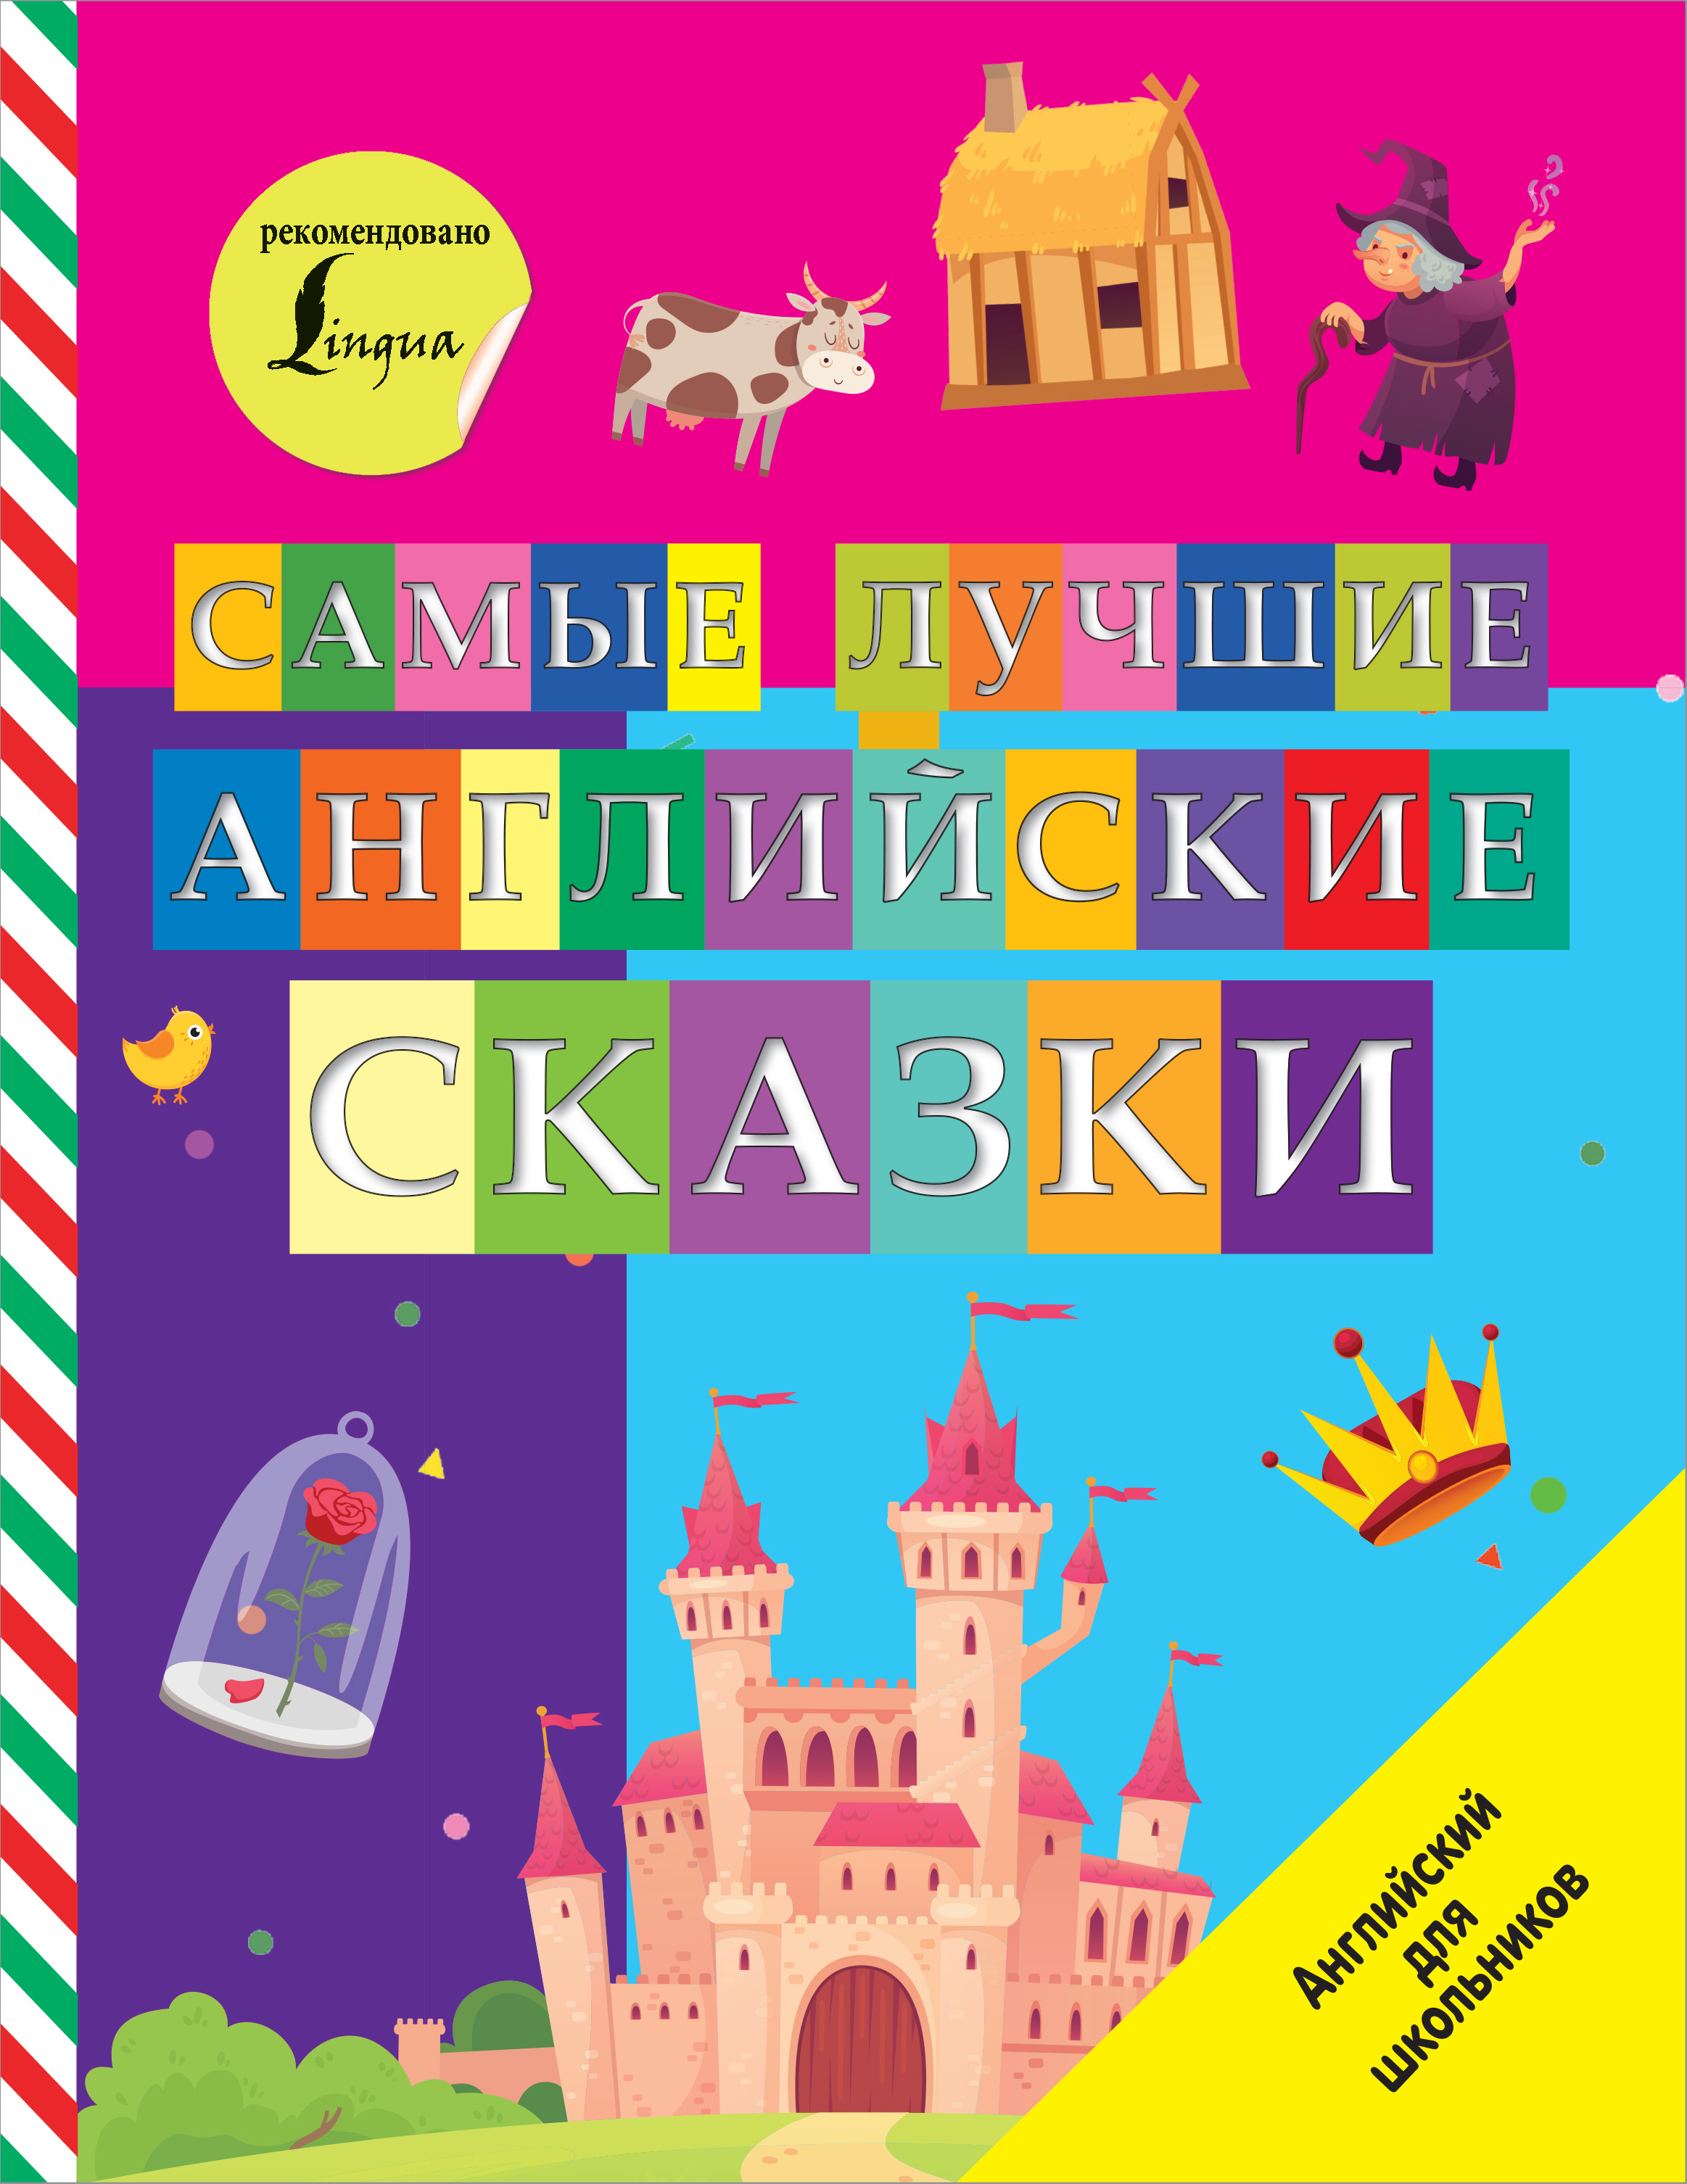 Самые лучшие английские сказки траффик на английском языке с русскими субтитрами